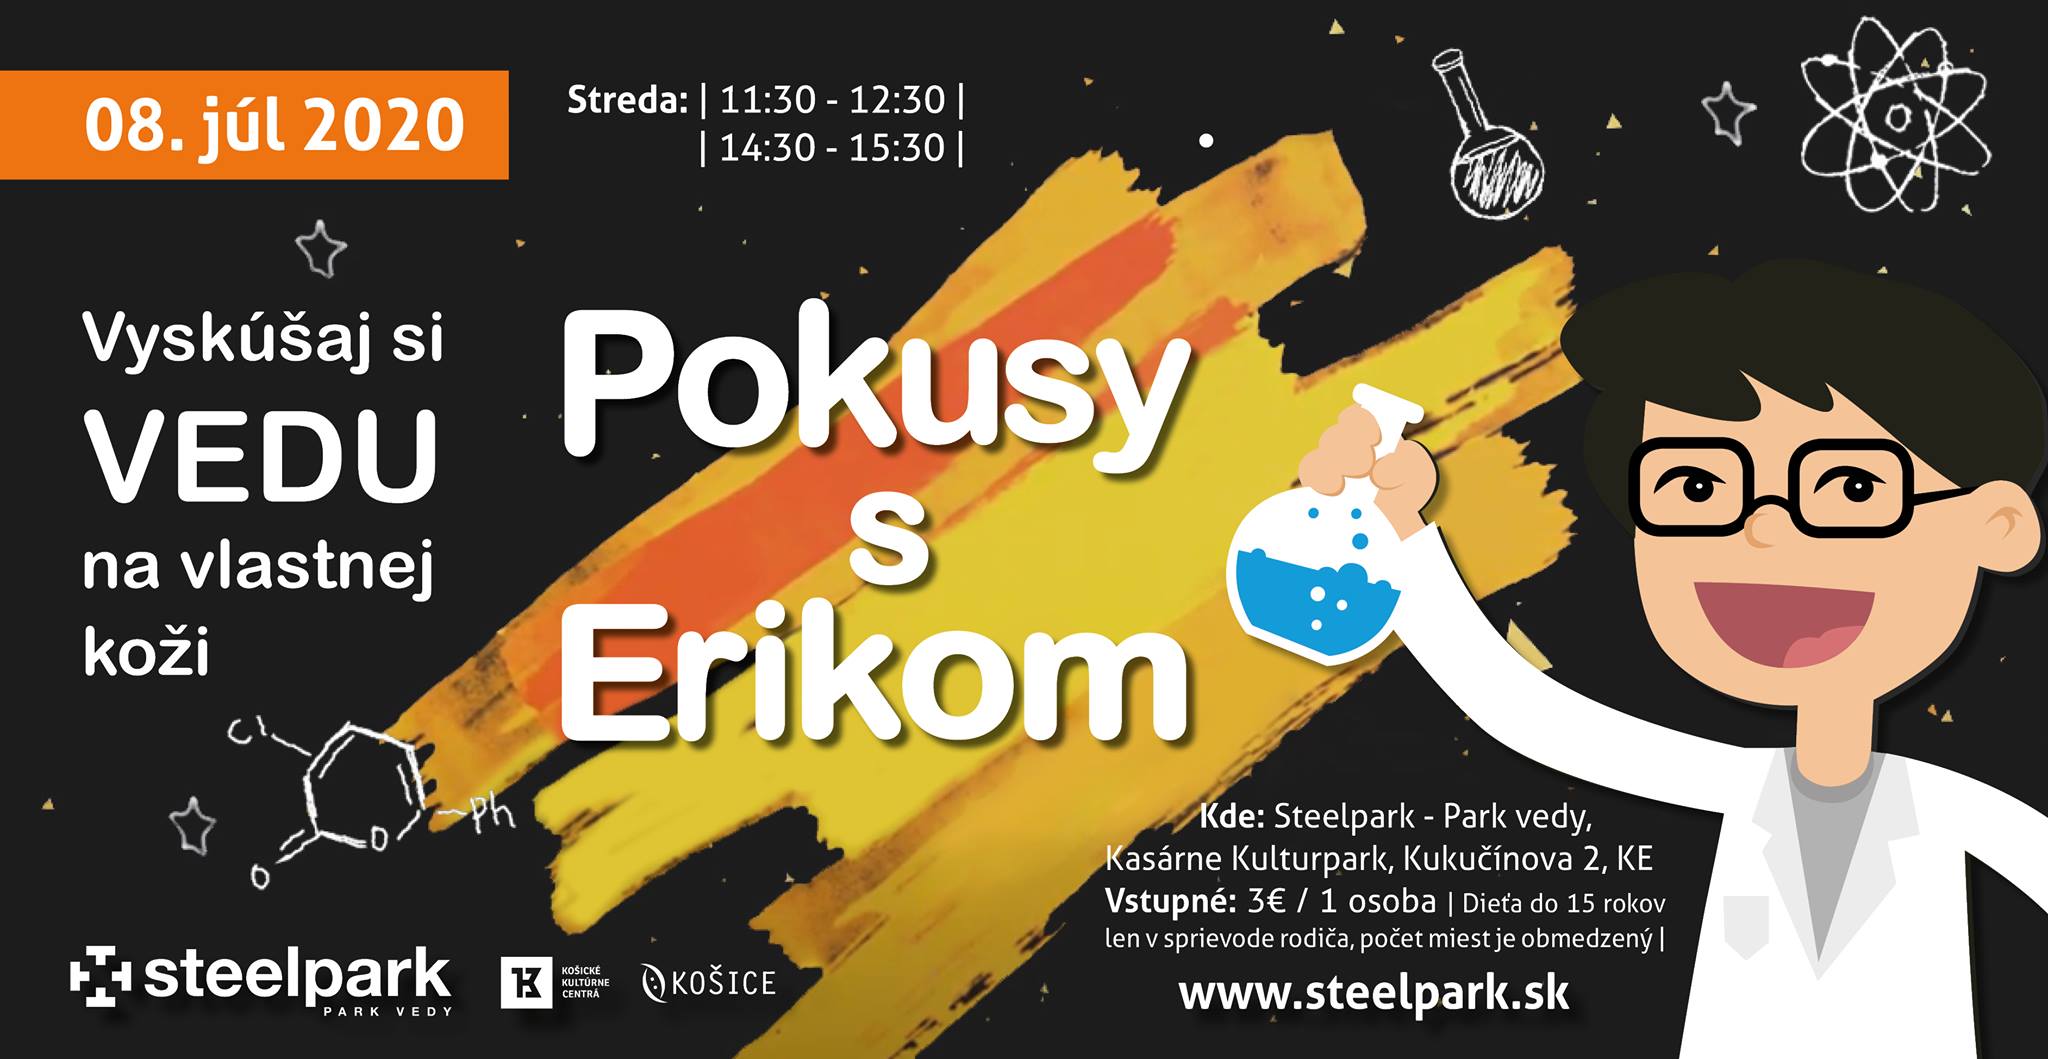 Pokusy s Erikom Steelpark - Park vedy